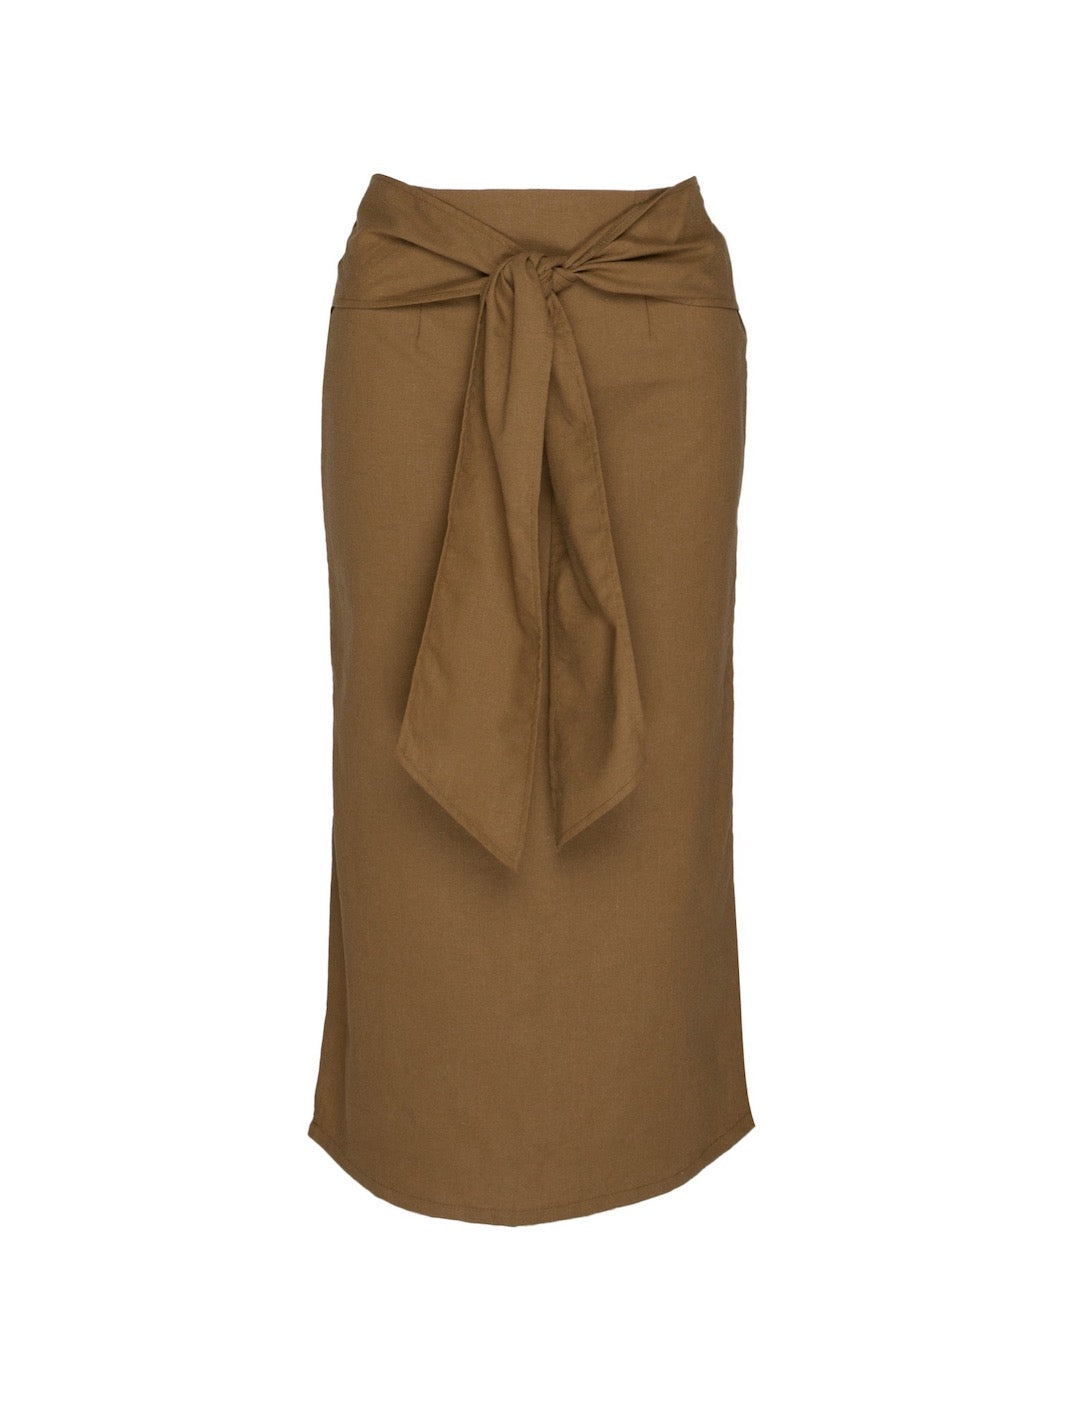 That's A Wrap Midi Skirt (Avocado)